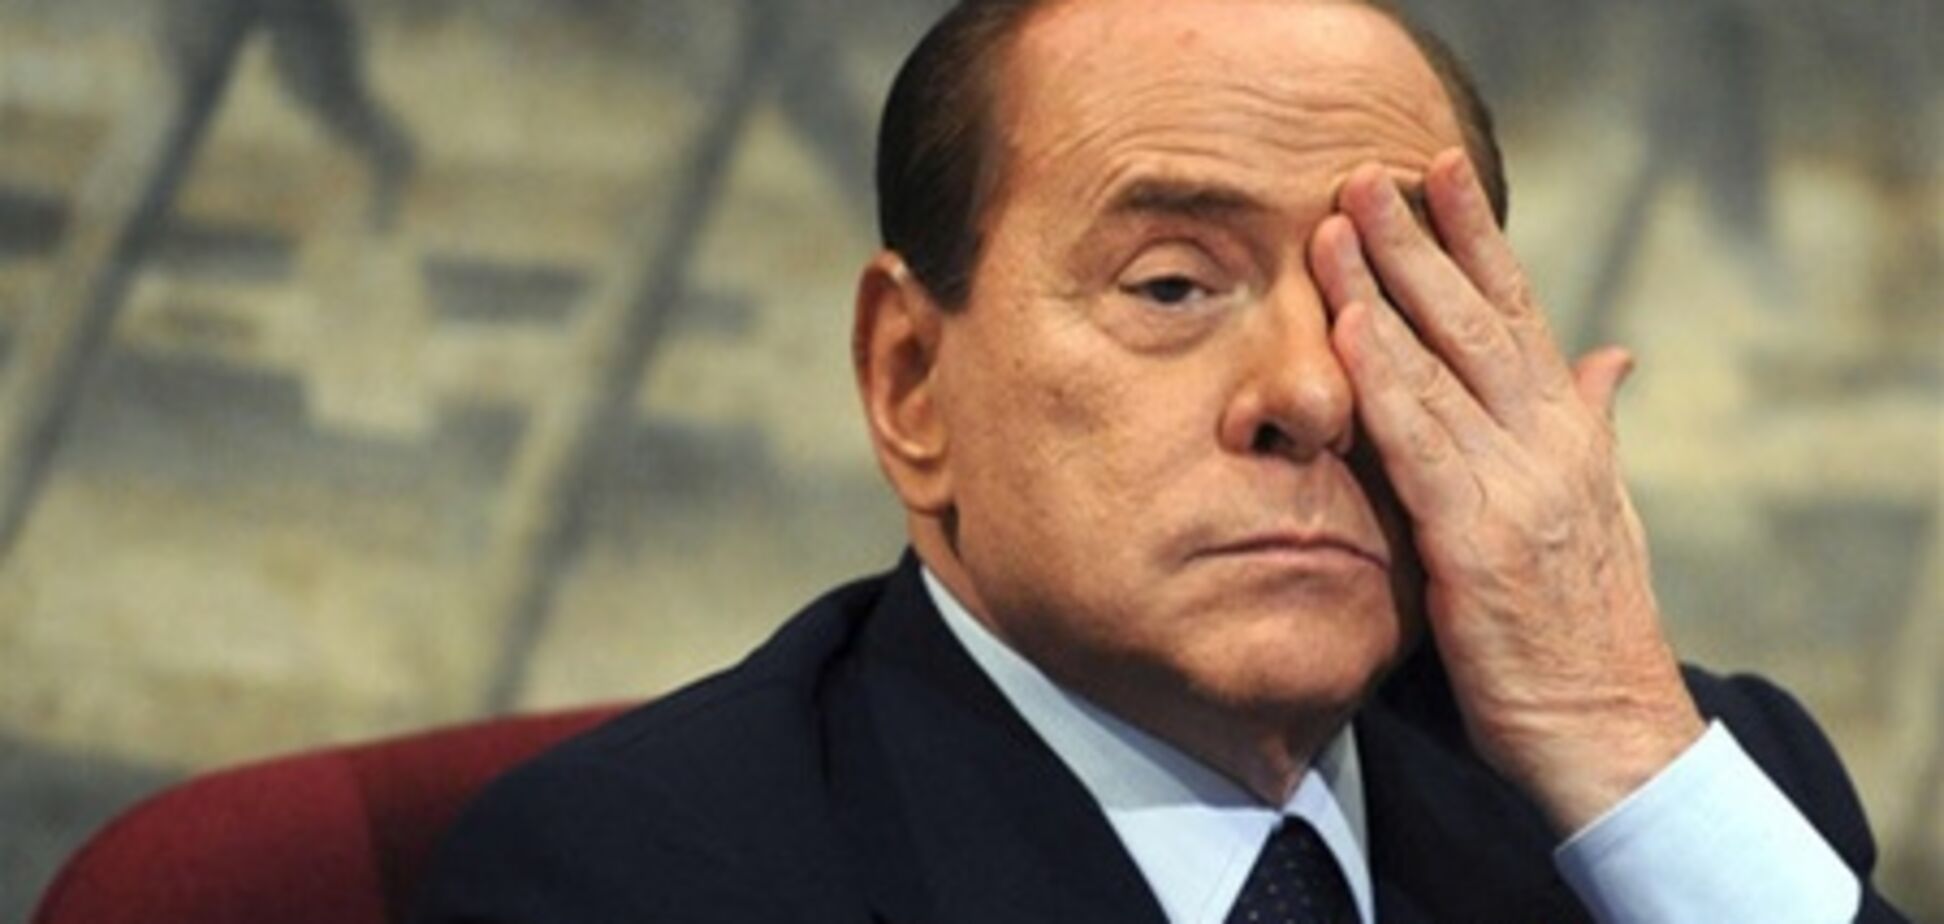 Вчорашній суд проти Берлусконі вперше закінчився вироком